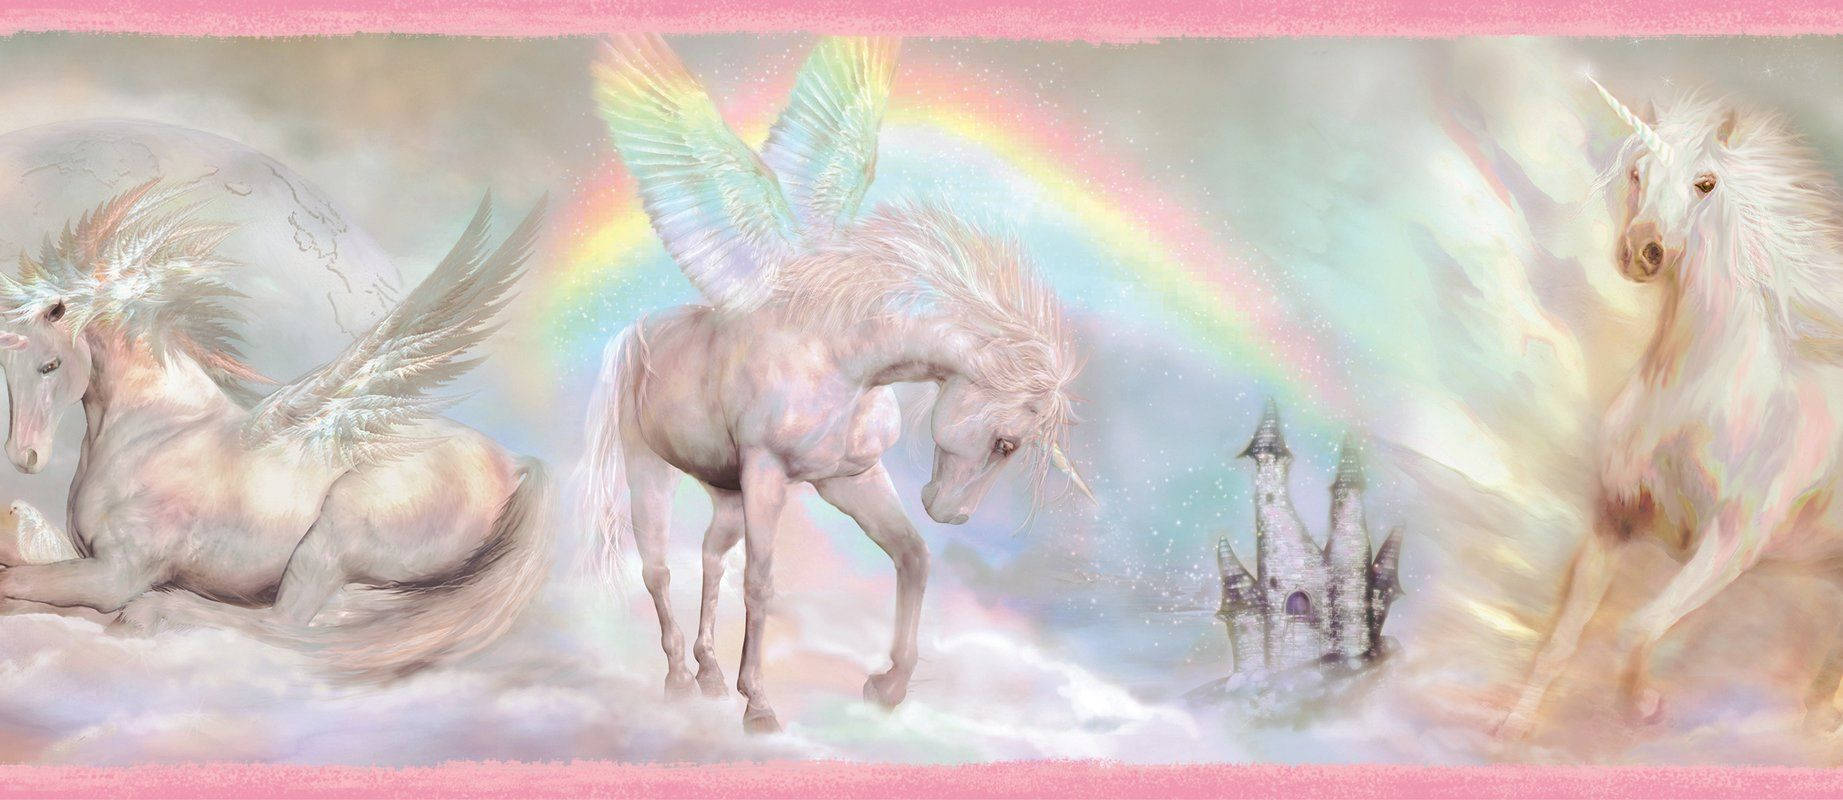 Unicorn Painting Background